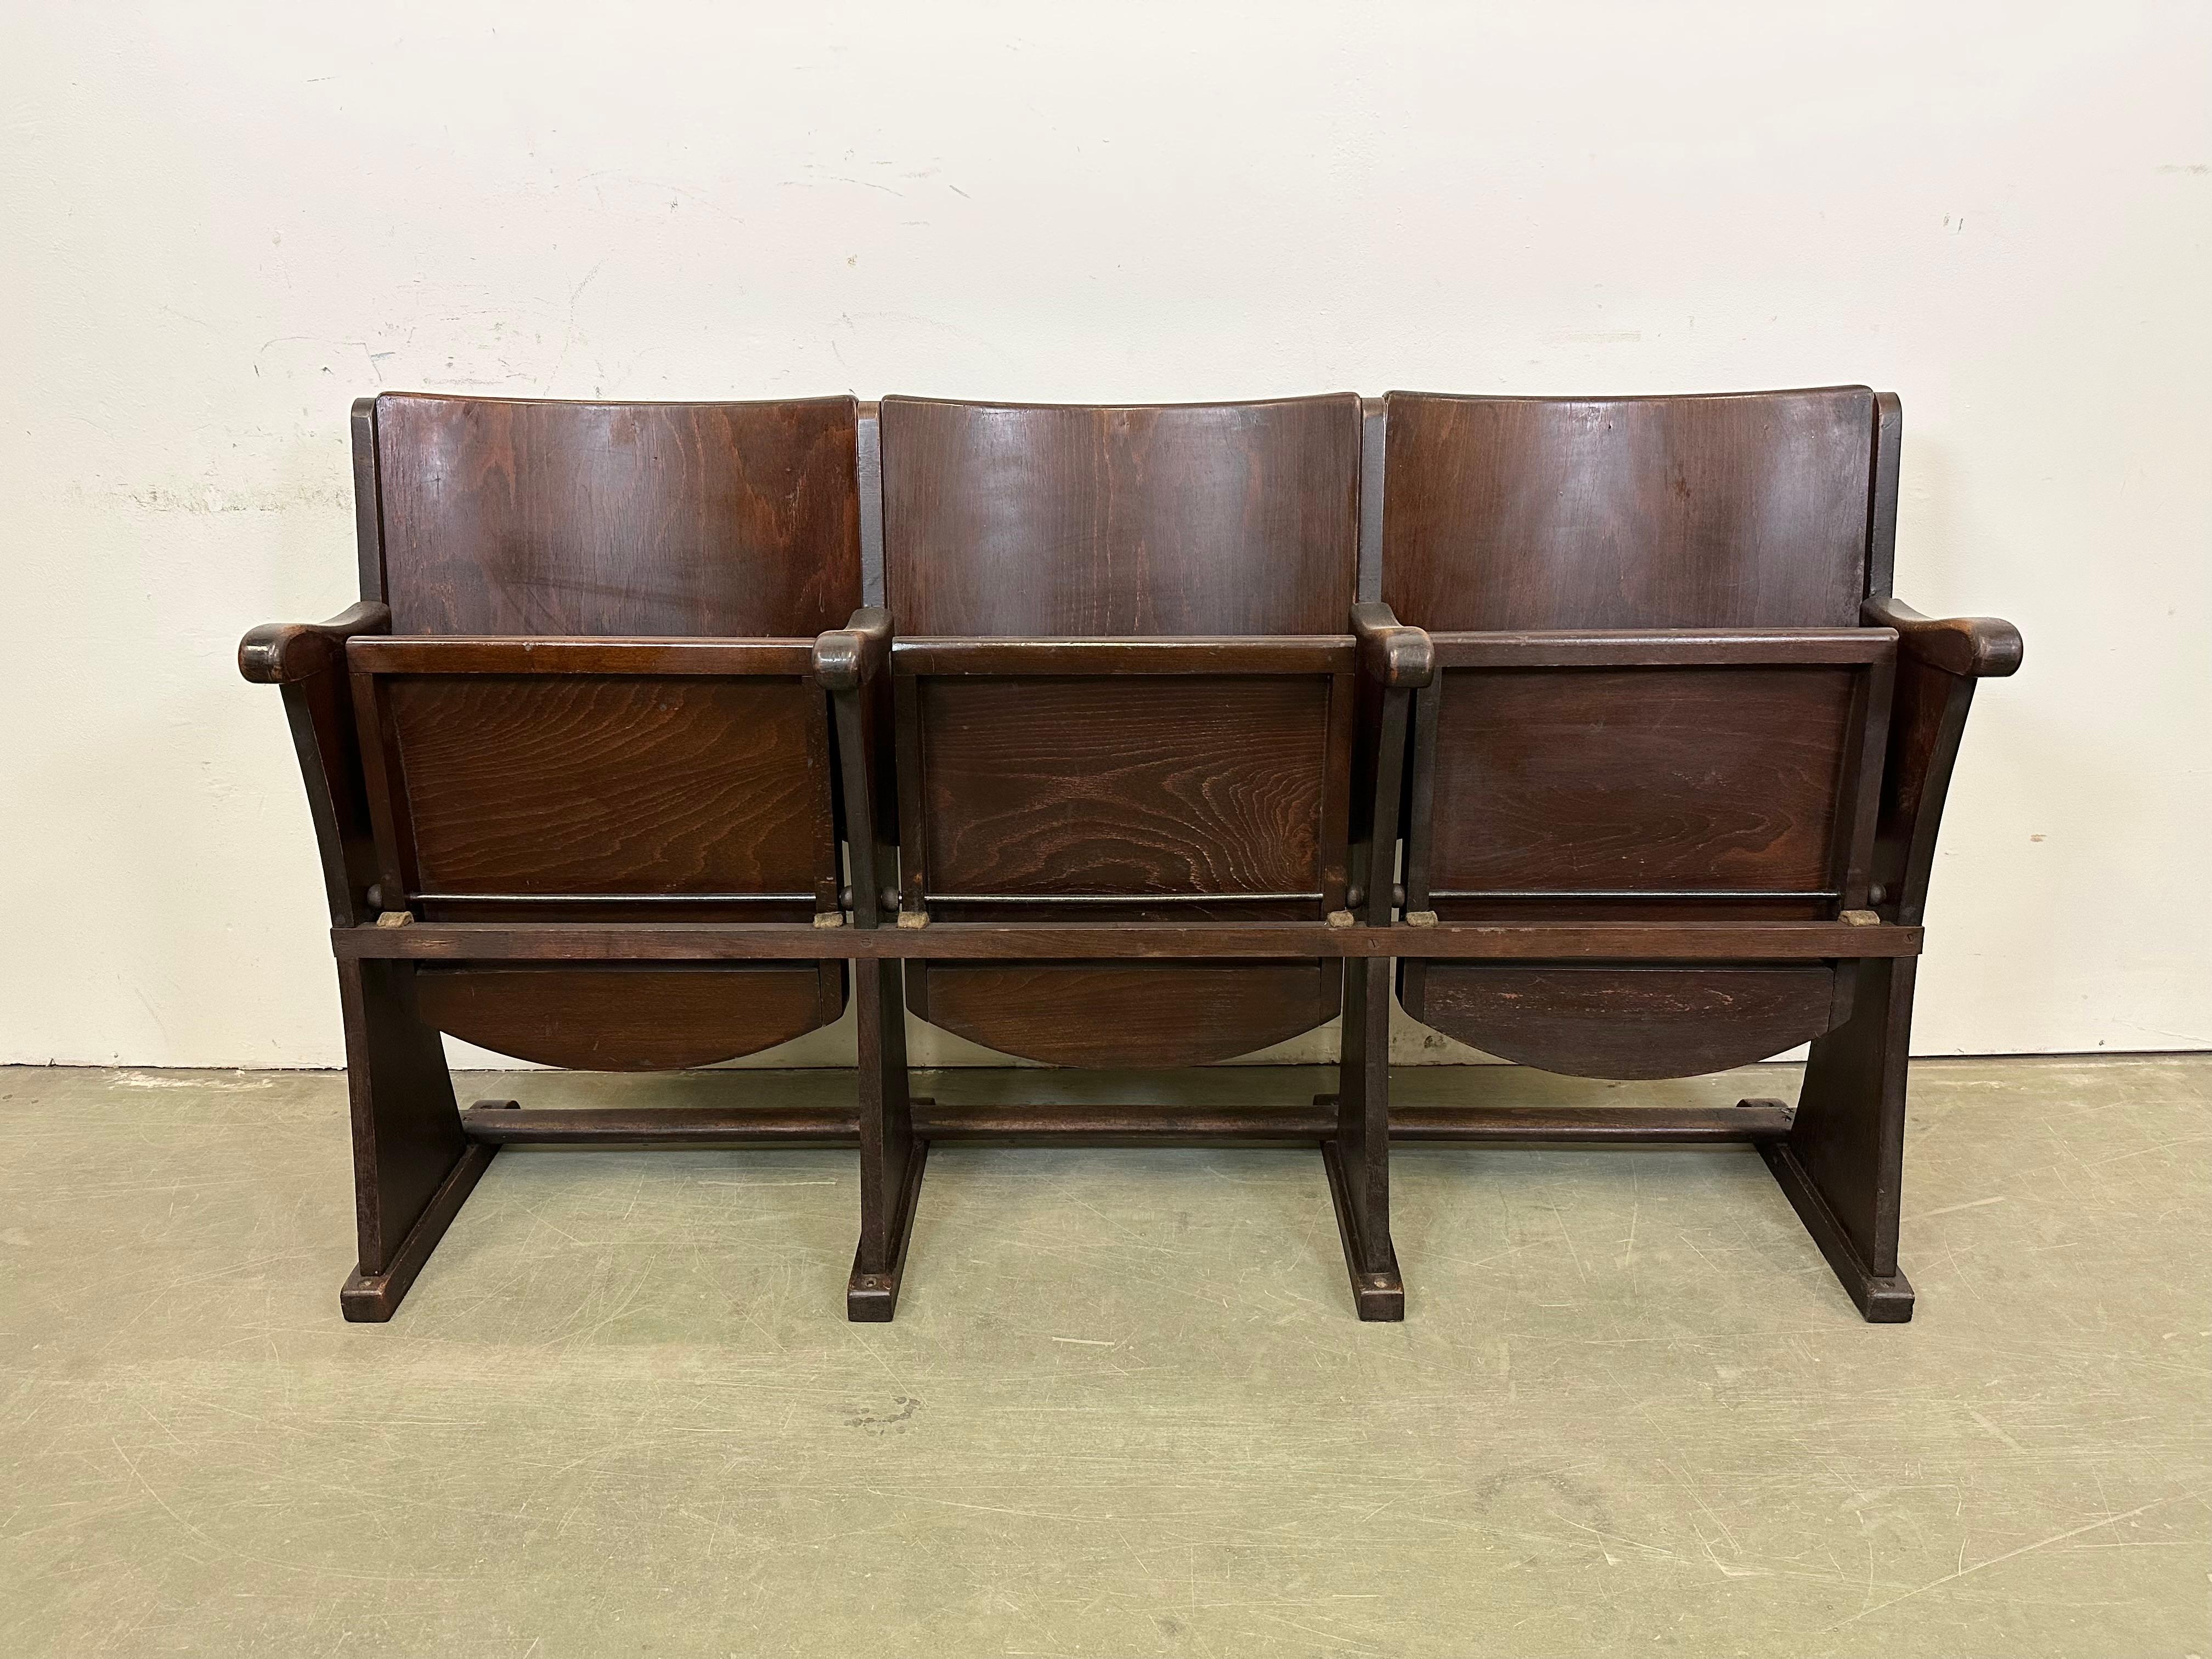 Diese dreisitzige Kinobank wurde von Thonet in der ehemaligen Tschechoslowakei in den 1930er bis 1950er Jahren hergestellt. Die Stühle sind stabil und können überall aufgestellt werden. Es ist komplett aus Holz gefertigt (teilweise Massivholz,